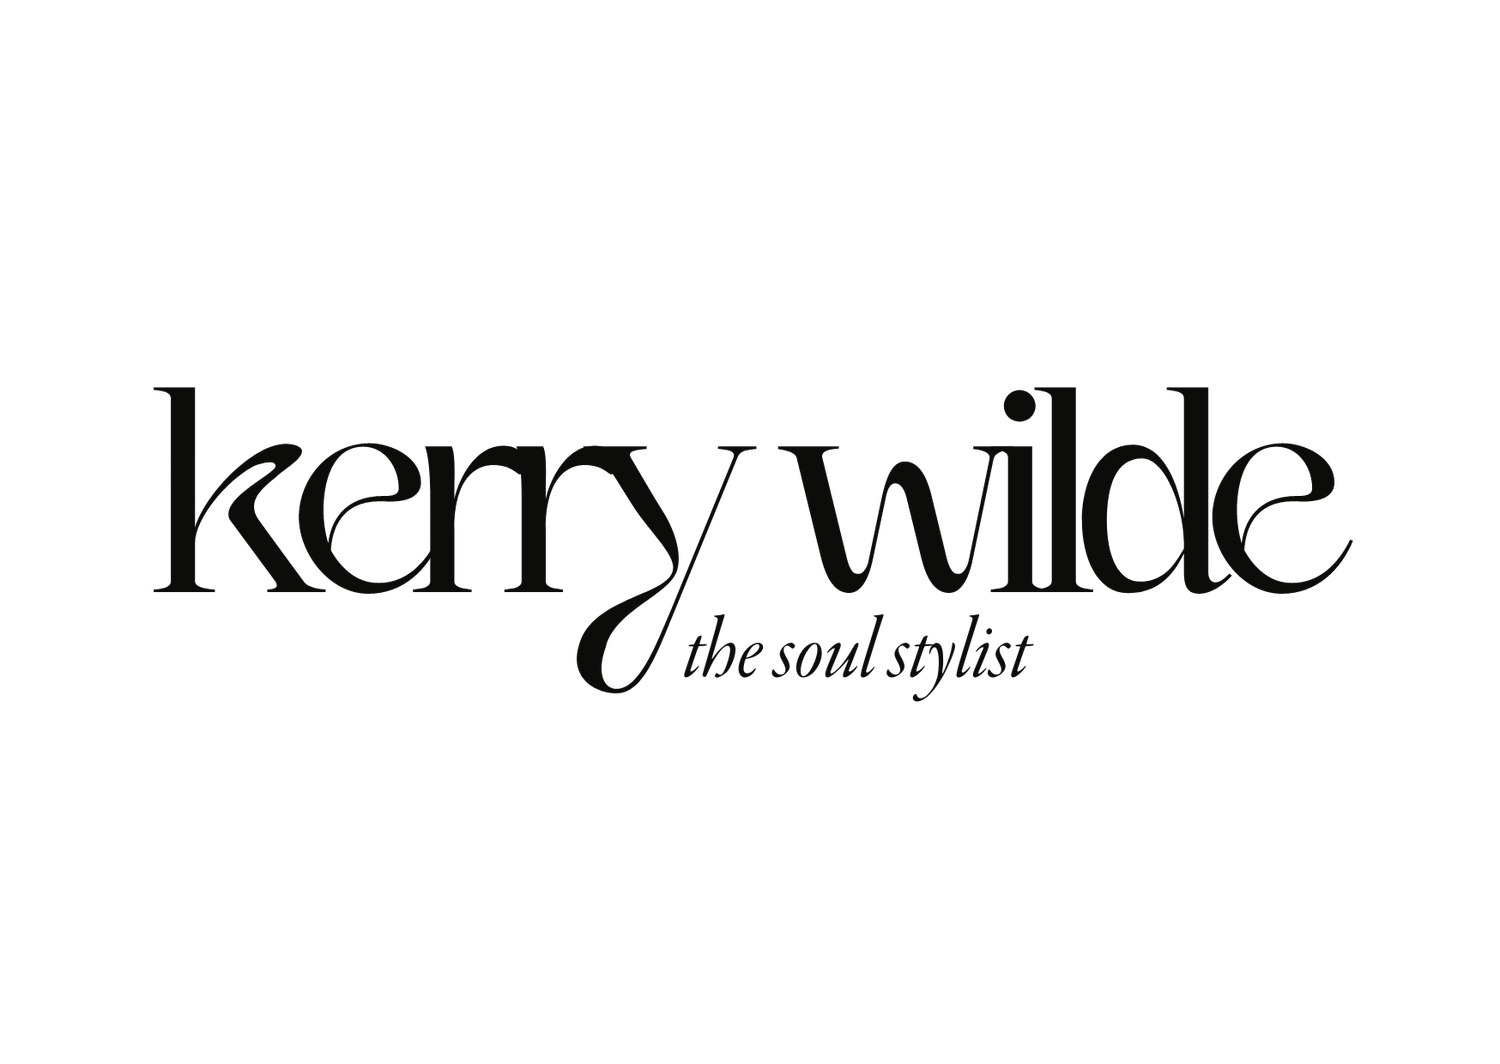 KERRY WILDE - the soul stylist